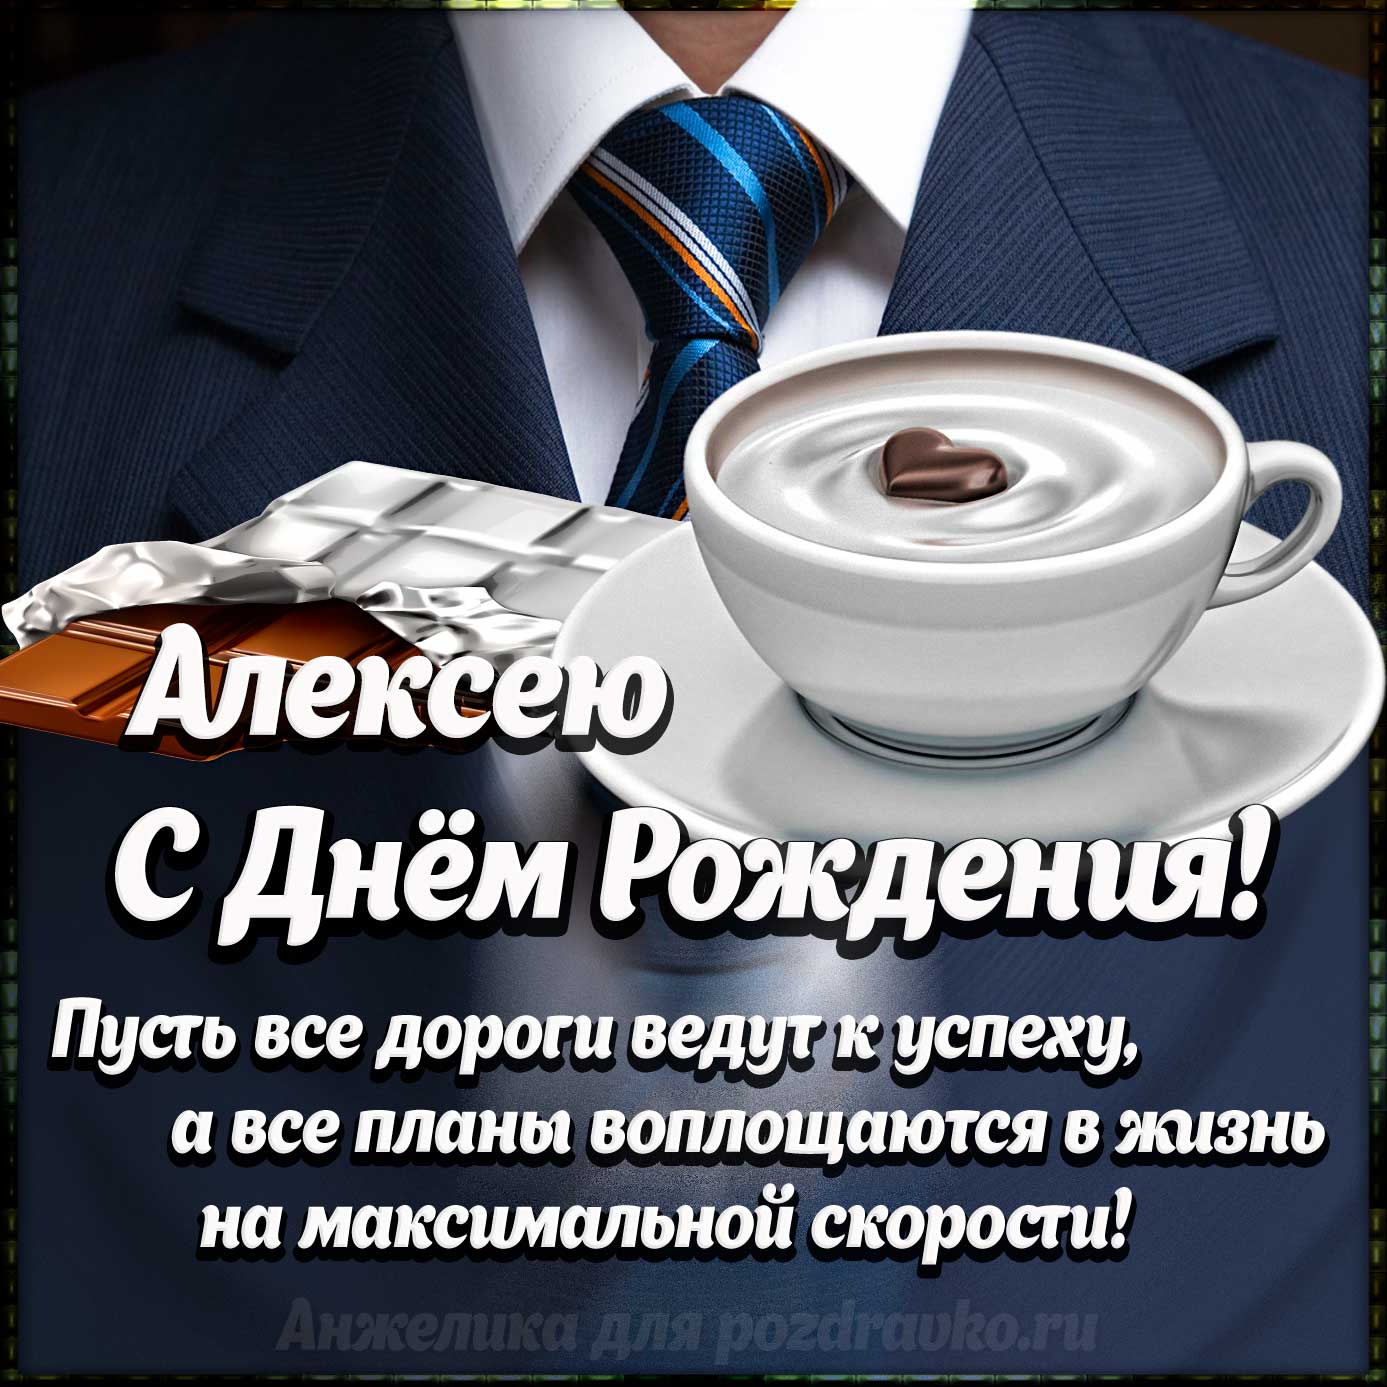 Открытка - Алексею с Днем Рождения с галстуком, кофе и пожеланием. Скачать бесплатно или отправить картинку.